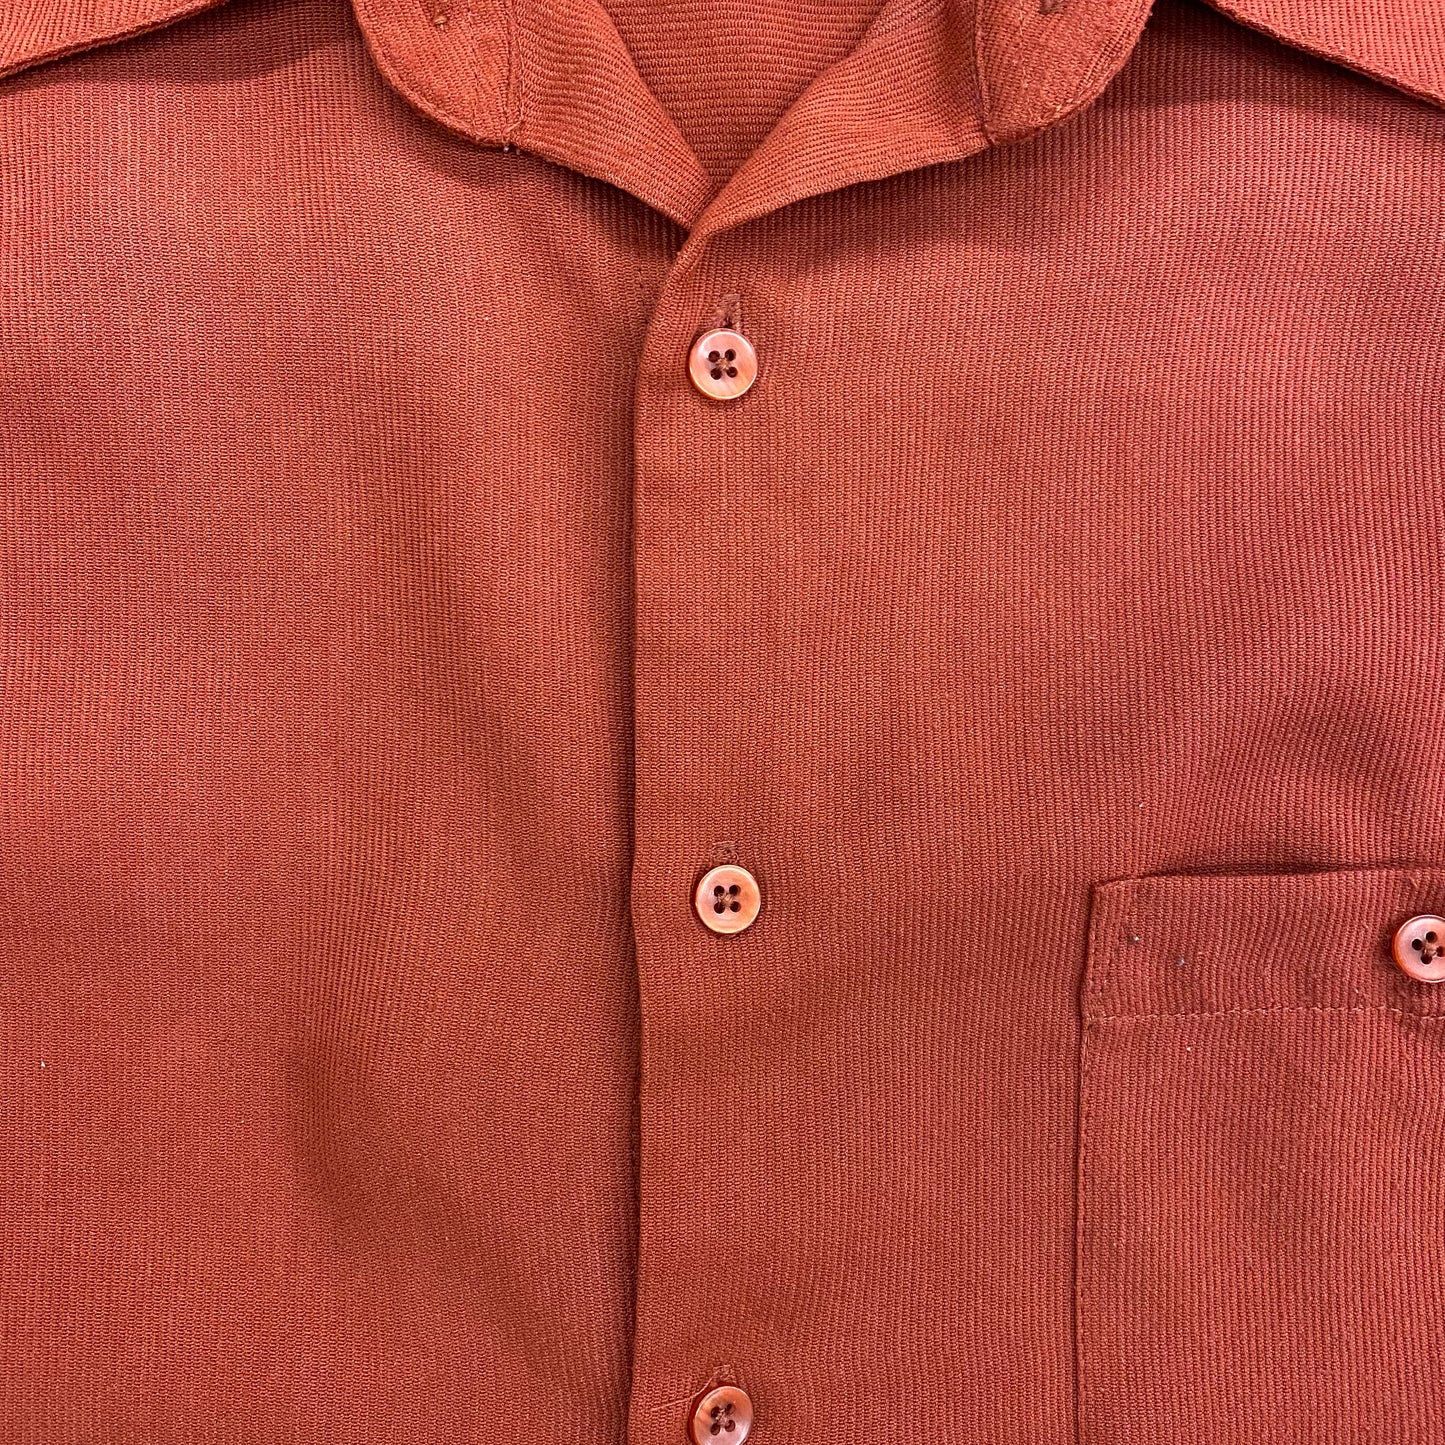 Vintage Bruno Suede Burnt Orange Button Up - Size Large